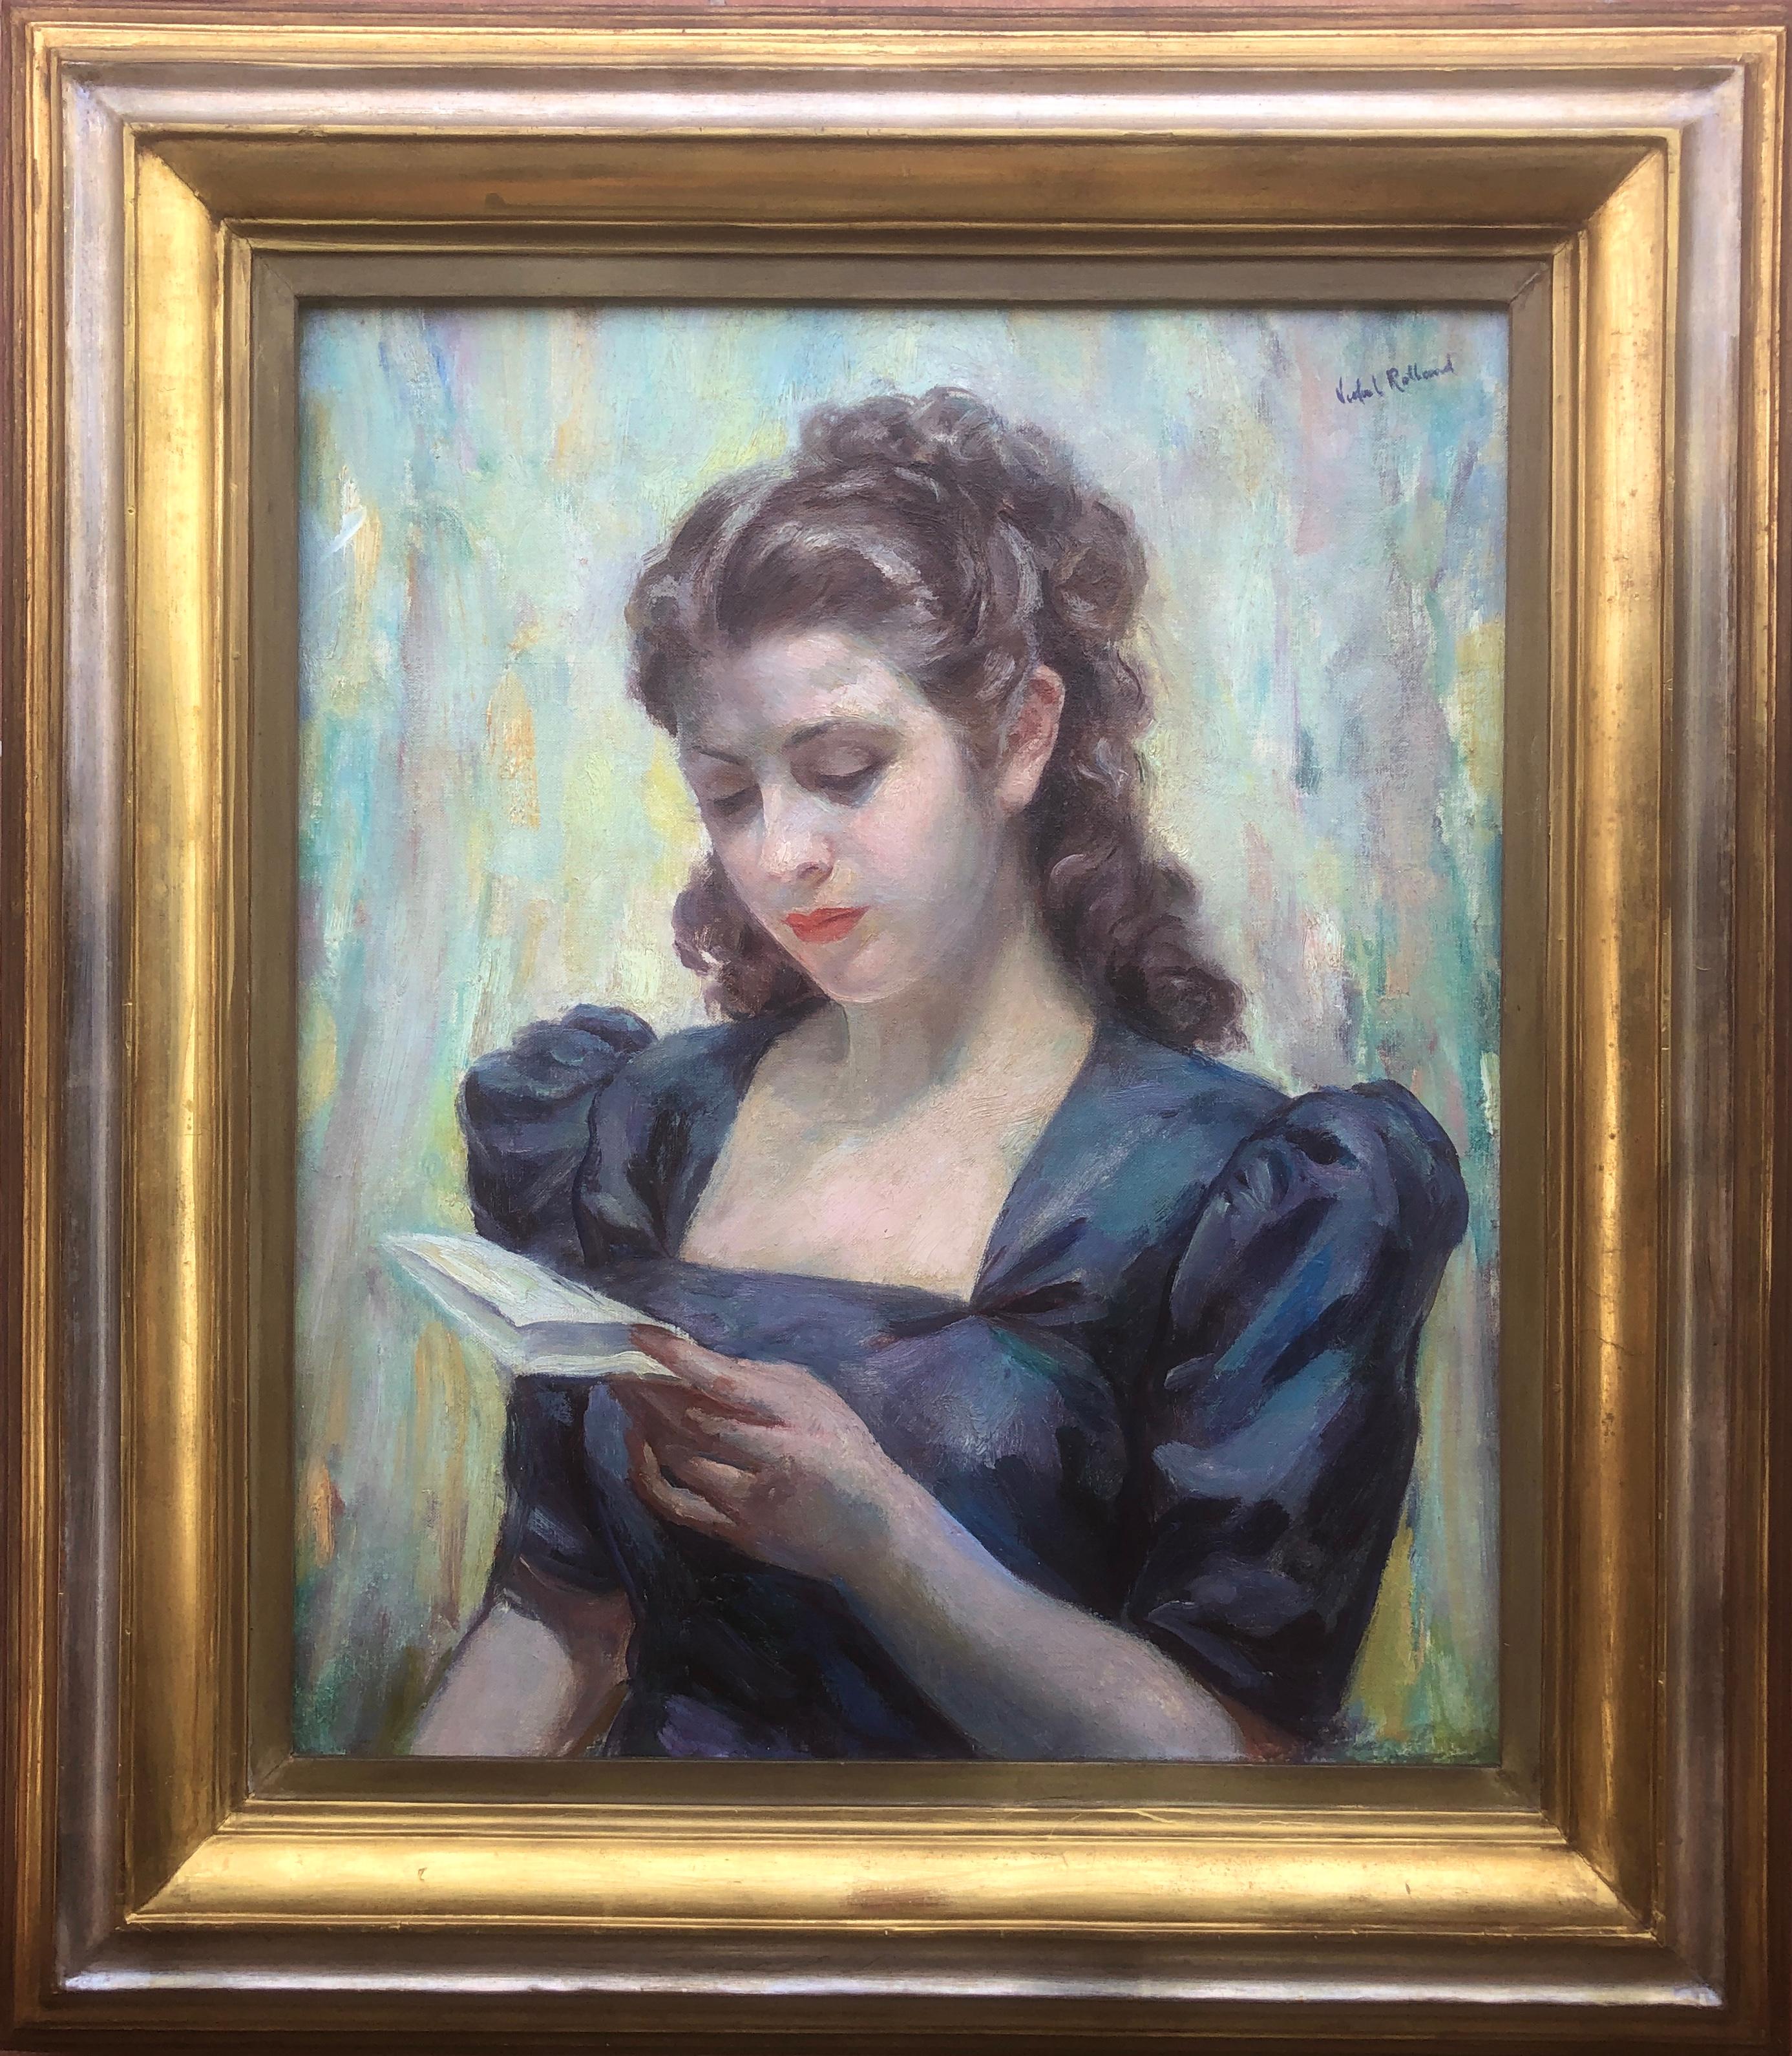 Lesen eines Liebesbriefes, Öl auf Leinwand, Gemälde einer Frau, Porträt – Painting von Antoni Vidal Rolland